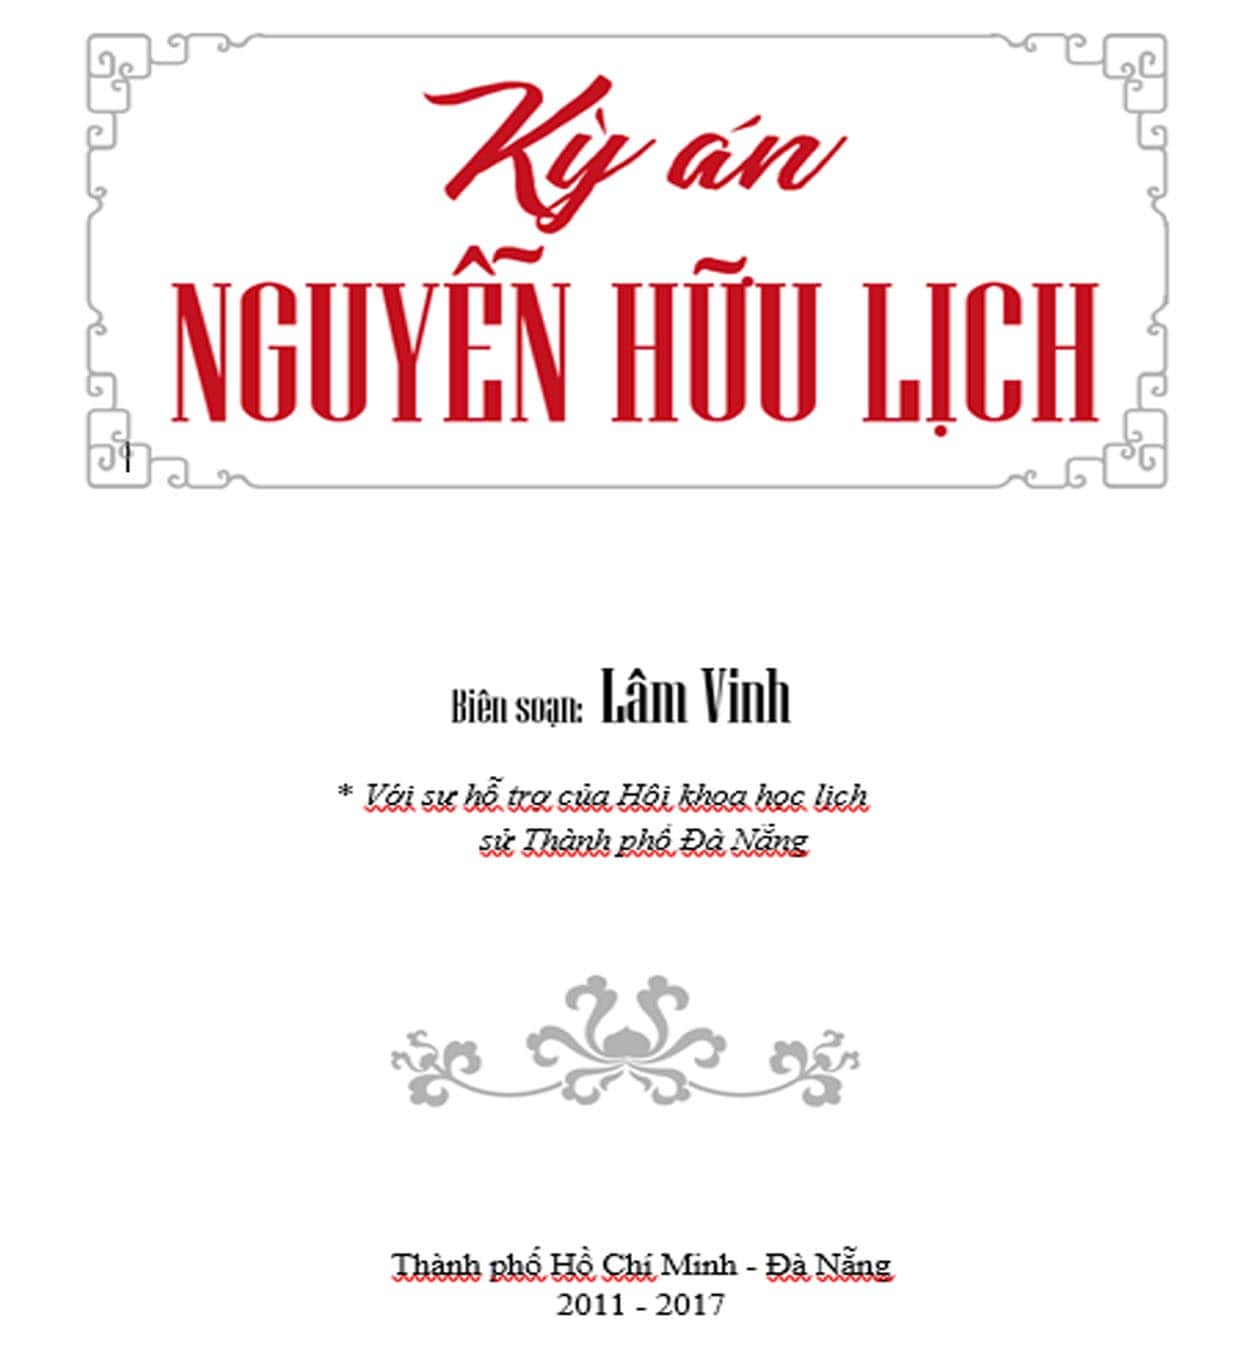 Ky an Nguyen Huu Lich Tien si Lam Vinh 2 min - Kỳ án Nguyễn Hữu Lịch - Chương 1 - Tác giả: TS. Lâm Vinh